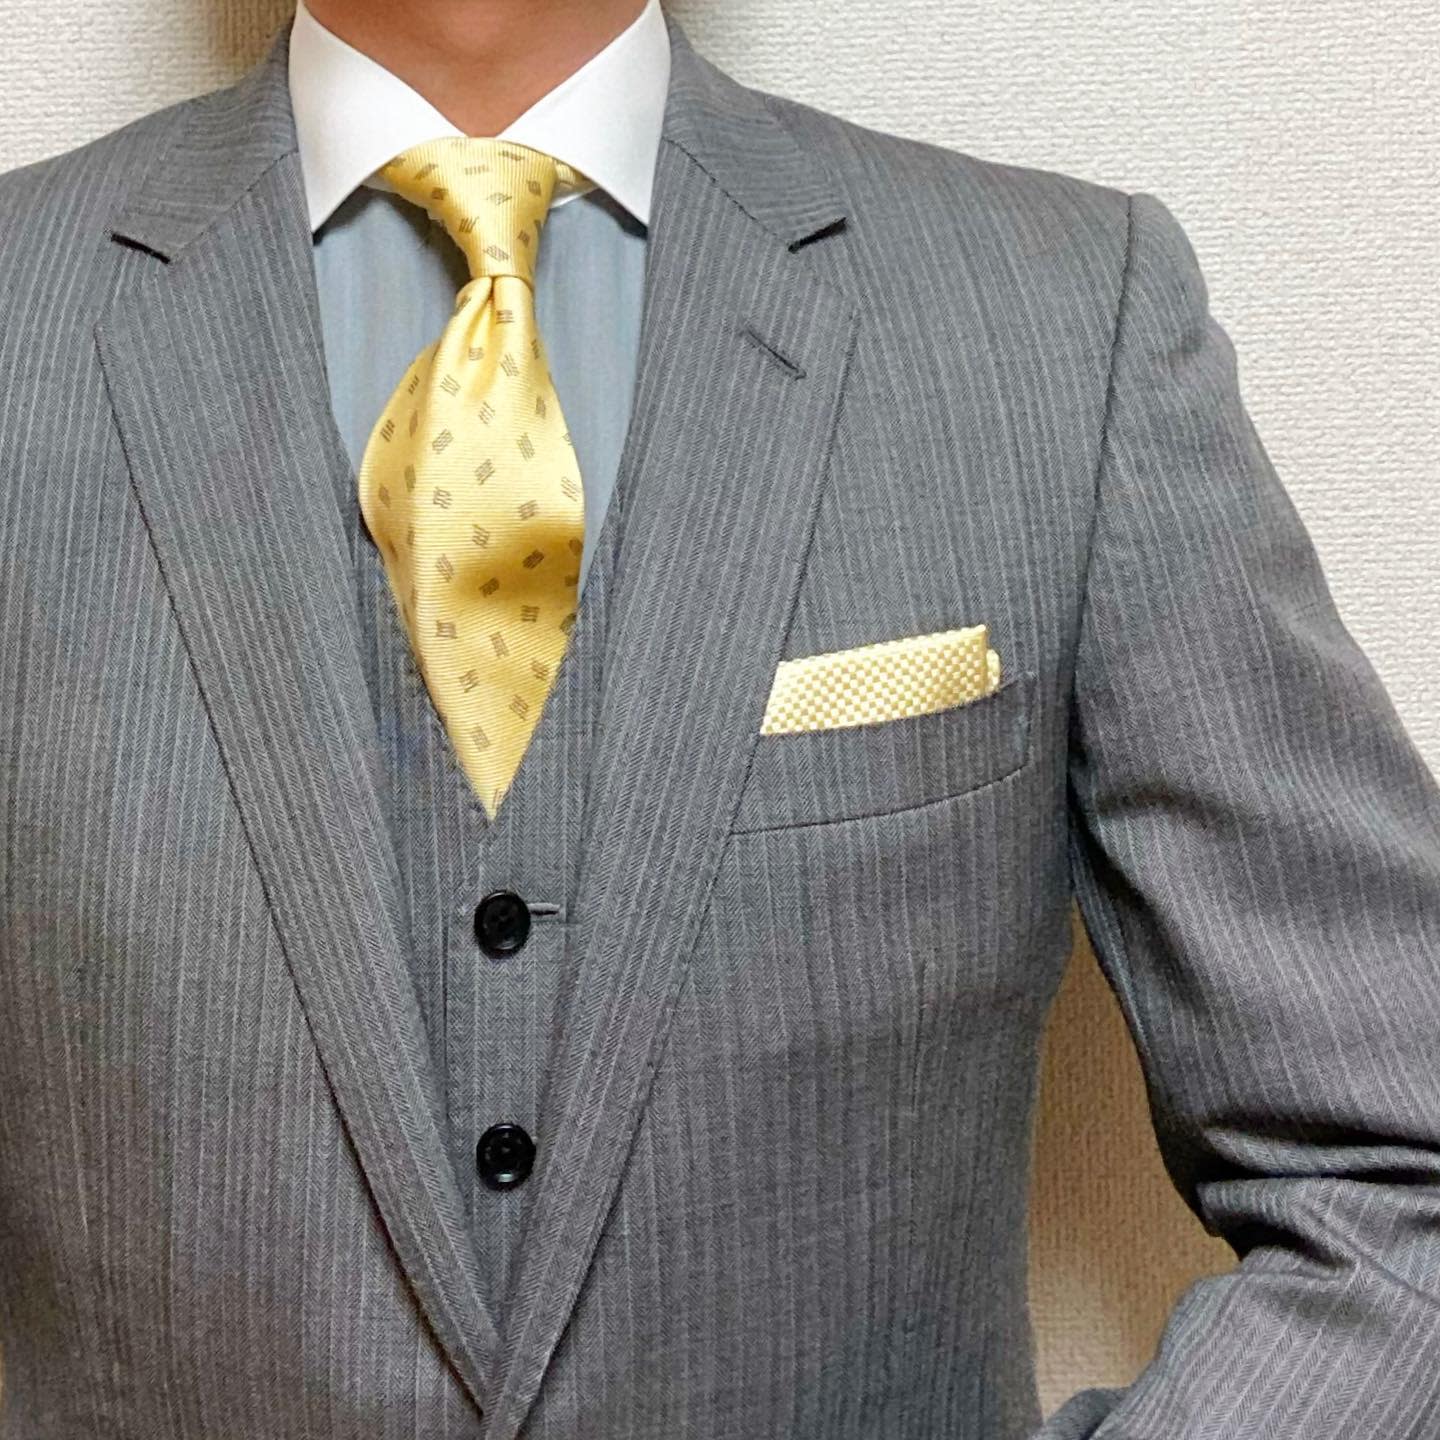 Yellow Tie With Grey Suit -ik.suit_and_tie